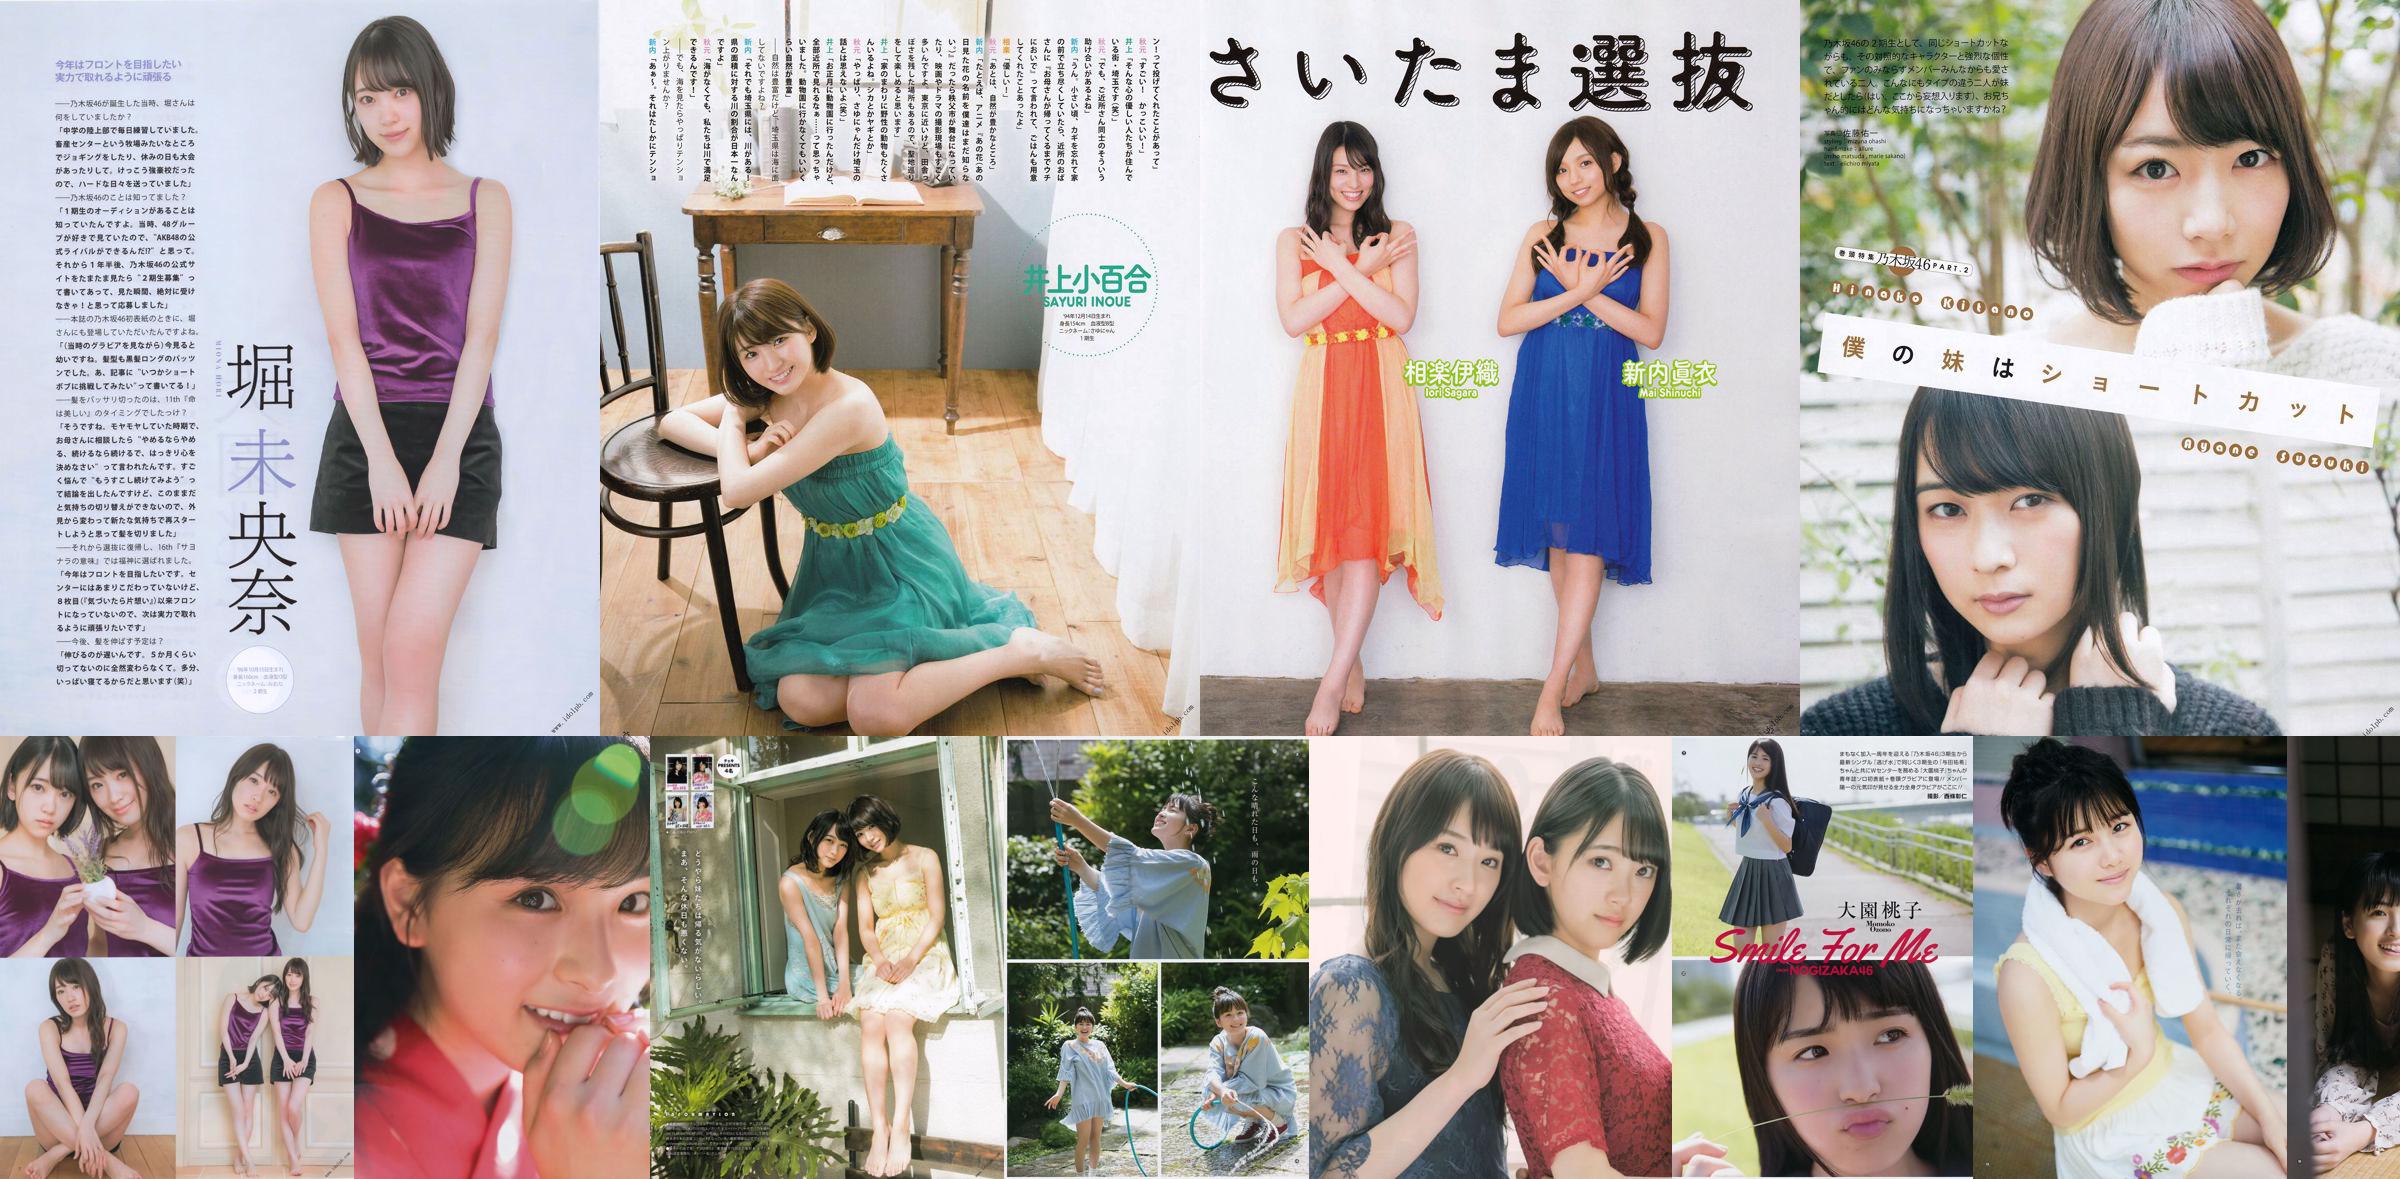 [Young Gangan] Momoko Oen, Sumi Sakaguchi 2018 No.15 Photo Magazine No.52c291 Page 1